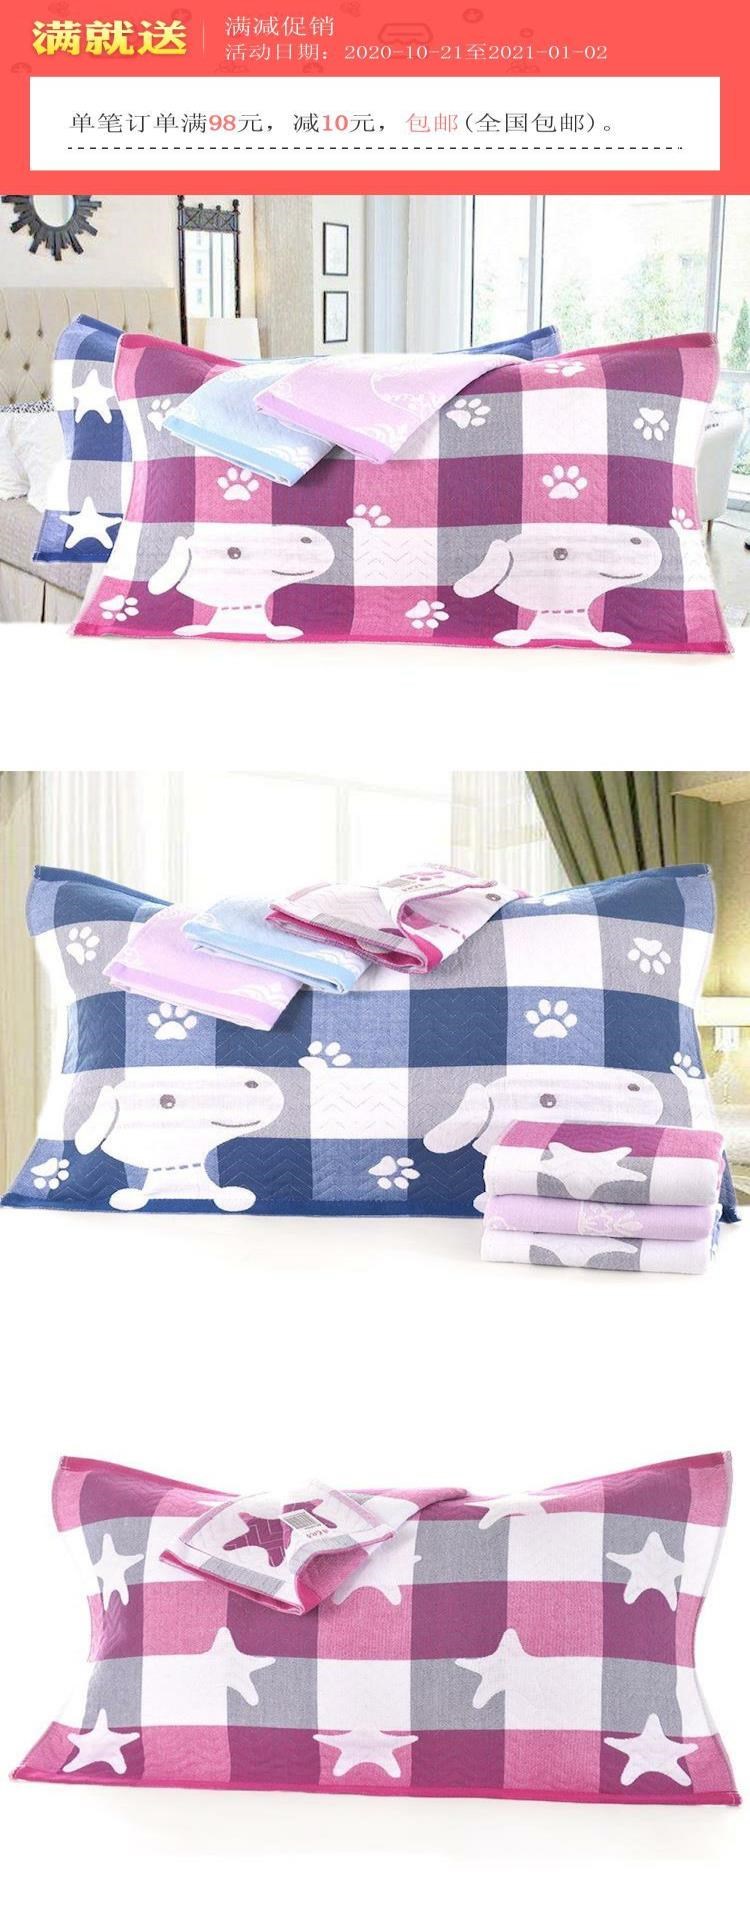 . Gối khăn trẻ em 40x60 gối cho bé gái khăn trải giường màu đỏ dải băng màu xanh bé gái giường đặc biệt mềm mại cho bé trai - Khăn gối